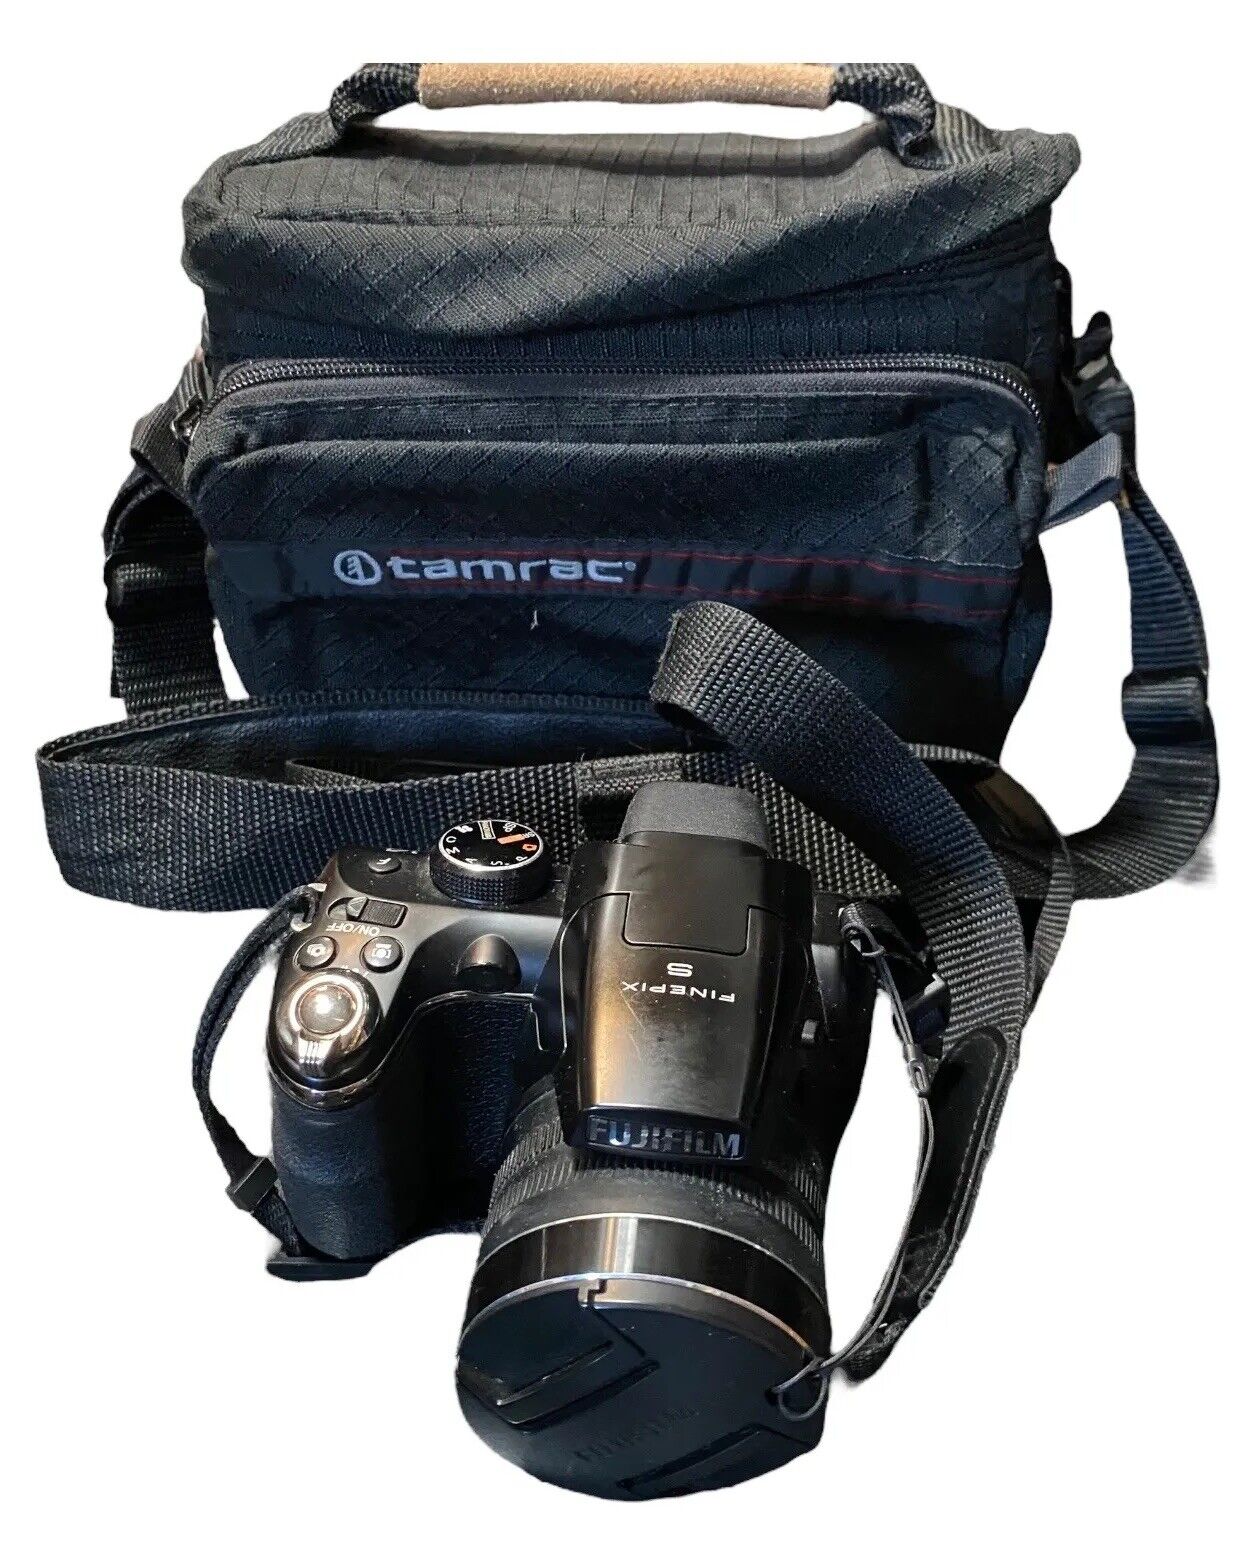 FujiFilm FinePix S4300 14MP 26x Zoom Full HD SLR Style Bridge Camera & Case